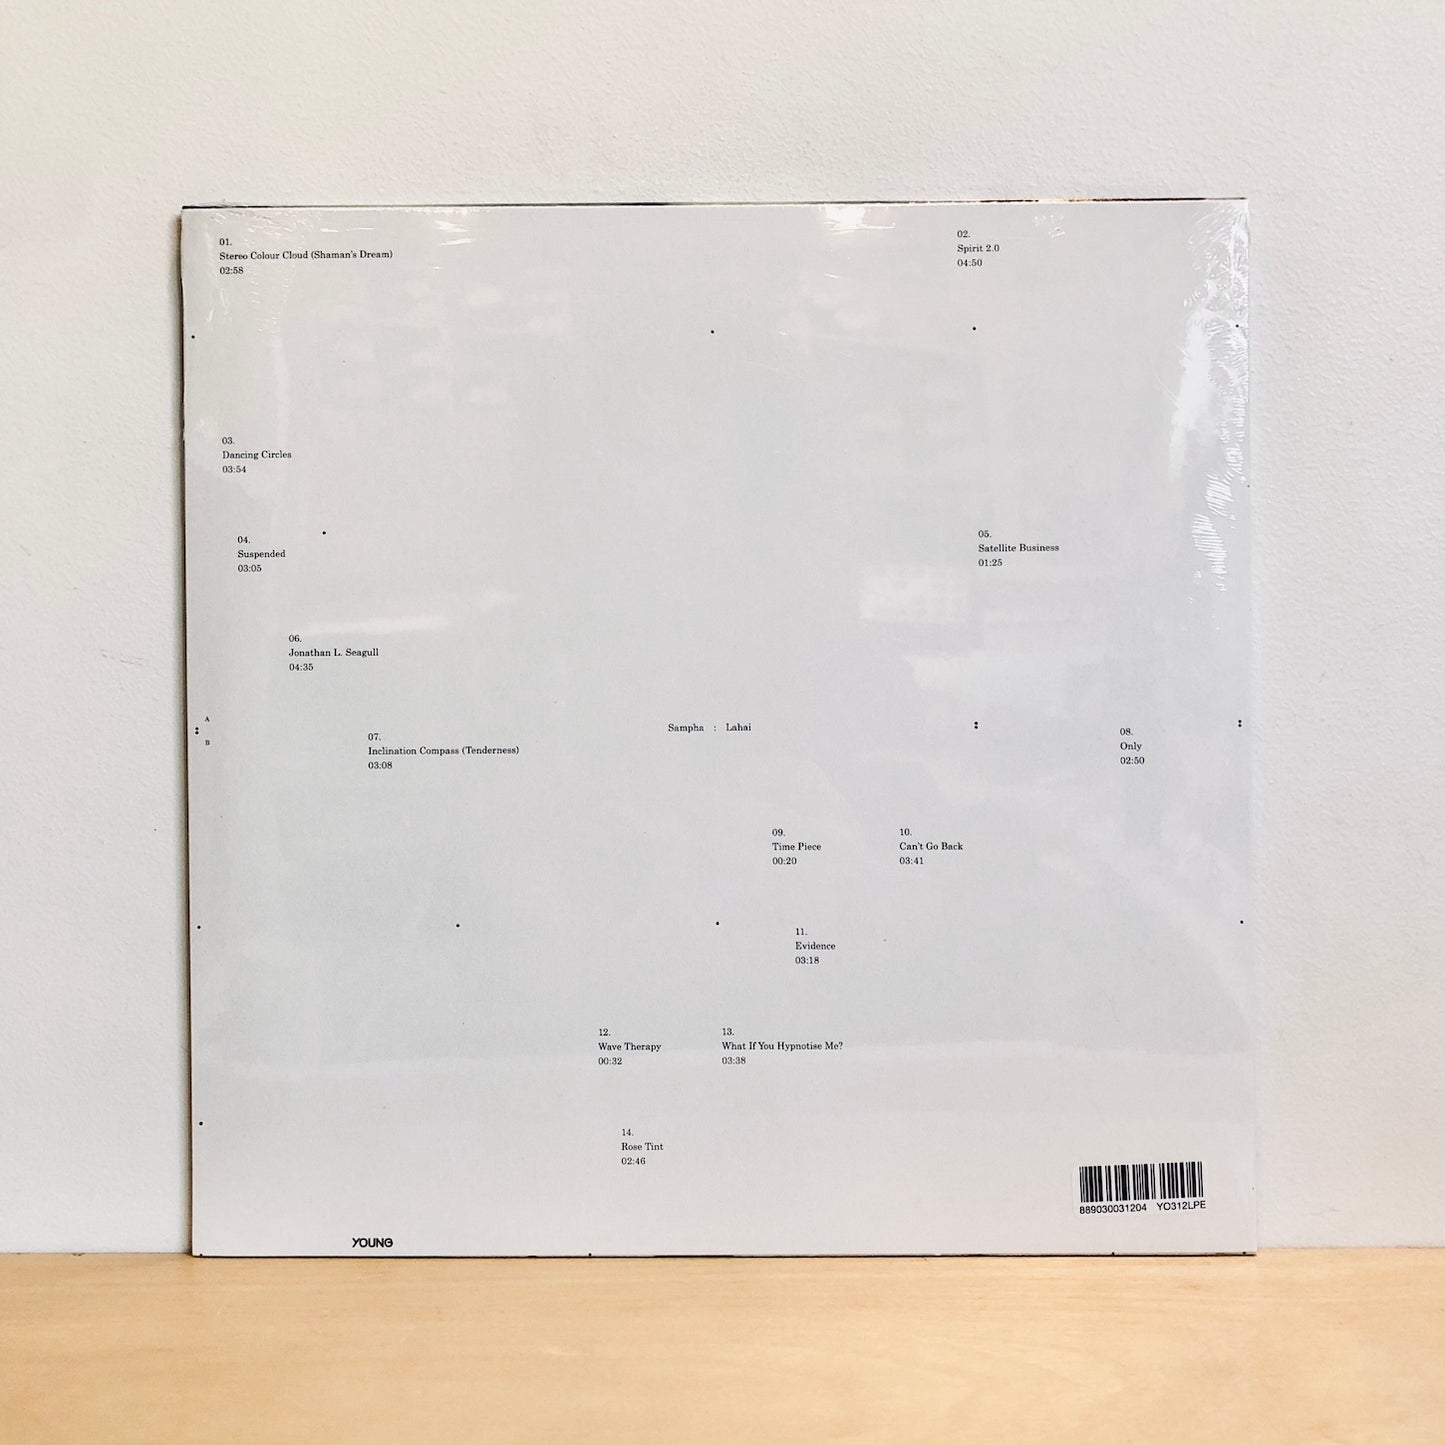 Sampha - Lahai. LP [Ltd. Ed. White Vinyl]